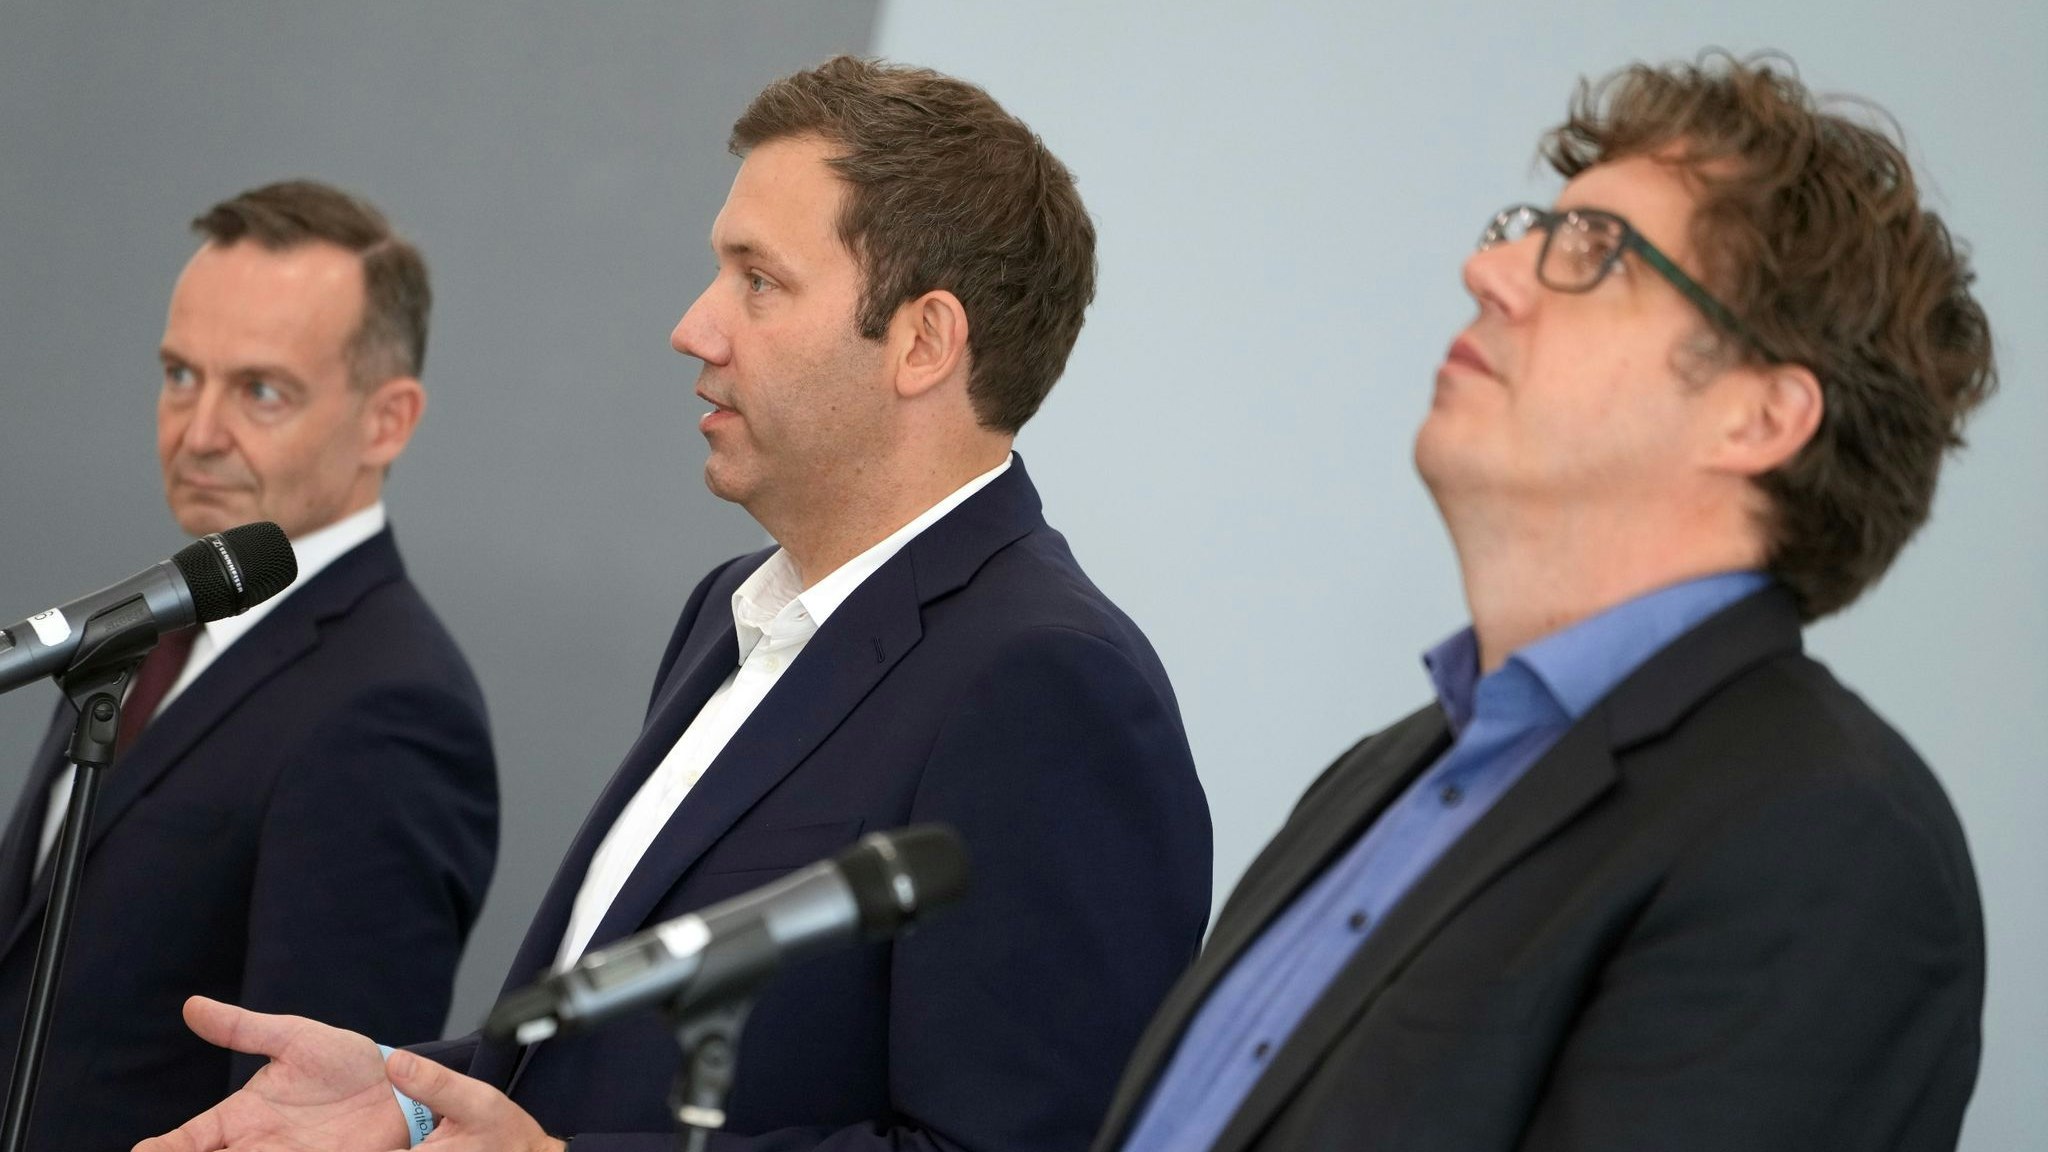 Volker Wissing (von links), FDP-Generalsekretär, Lars Klingbeil, SPD-Generalsekretär, und Michael Kellner, Bundesgeschäftsführer von Bündnis 90/Die Grünen. Foto: dpa/Nietfeld